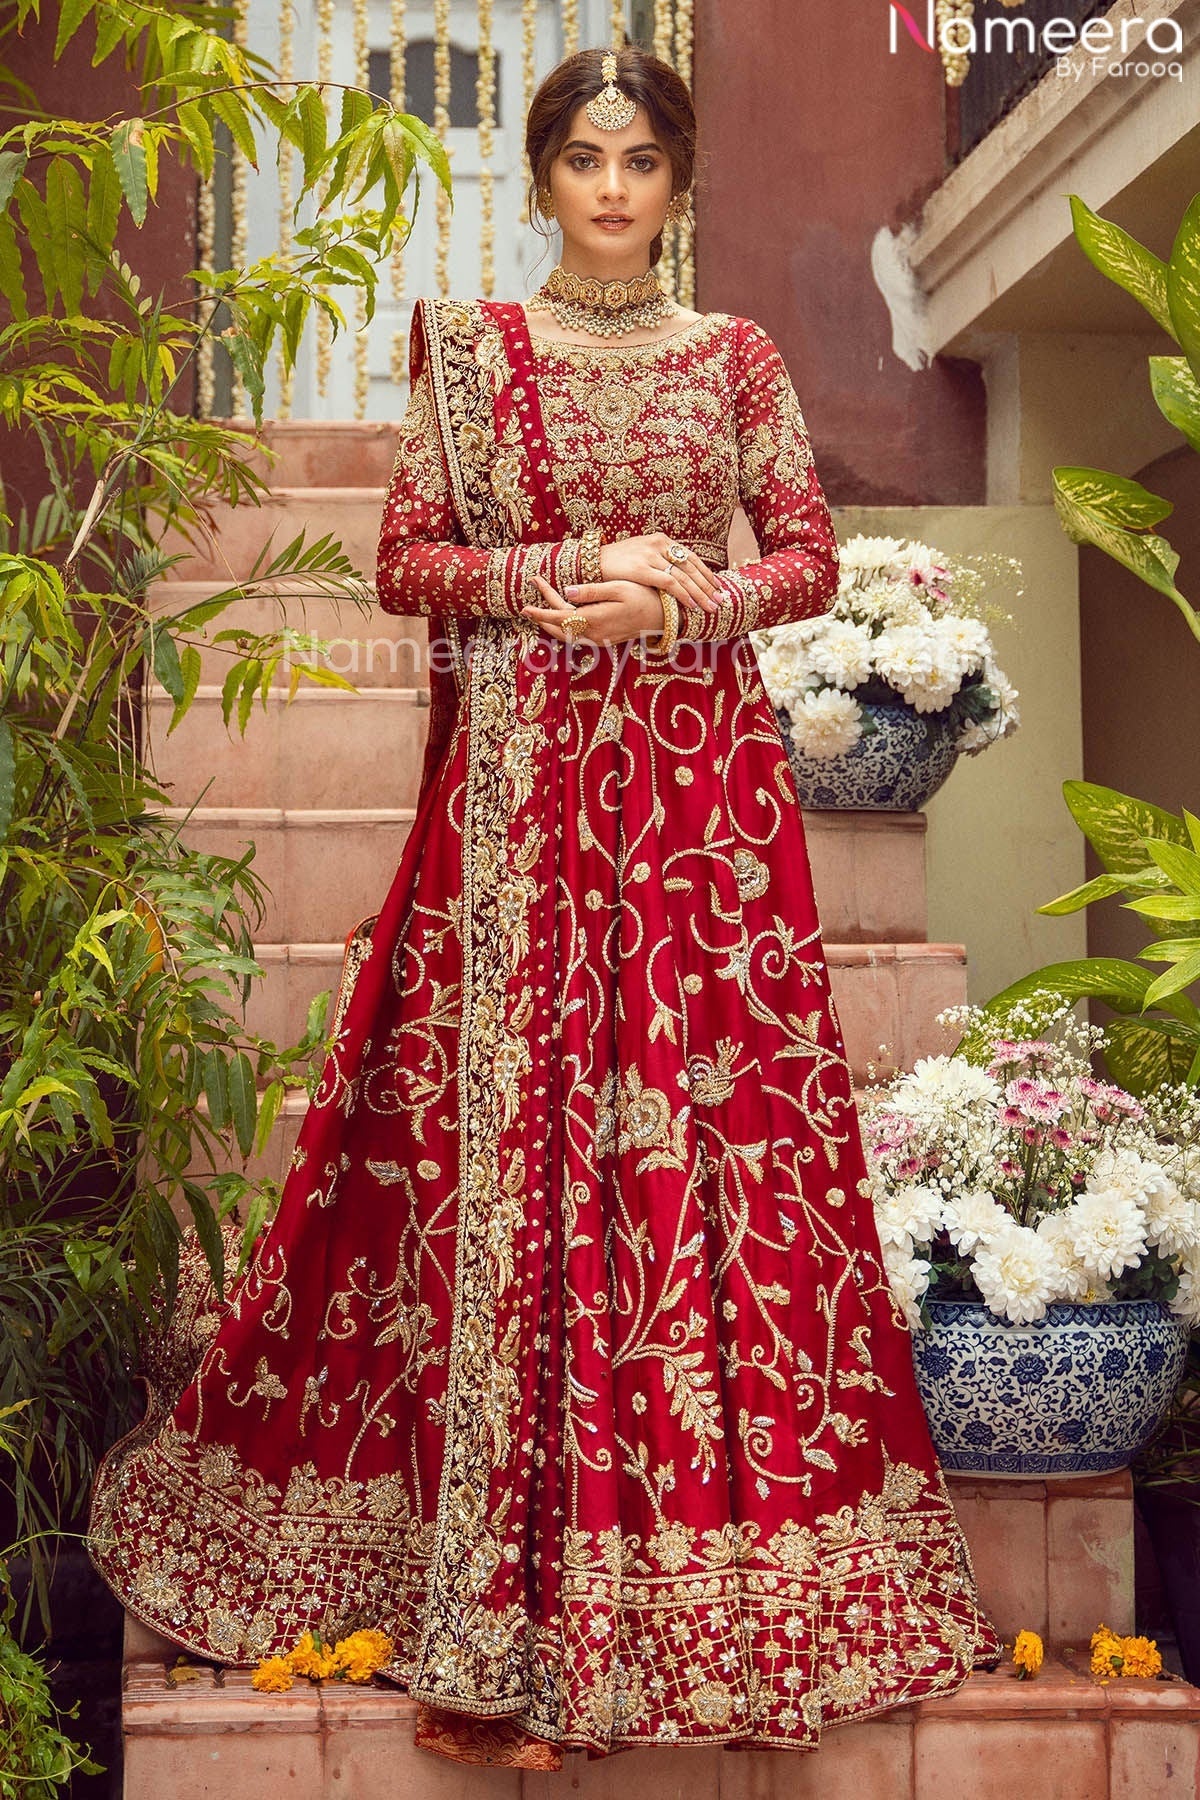 Pretty Red Bridal Dress Pakistani Designer Attire Online 2021 Nameera By Farooq 